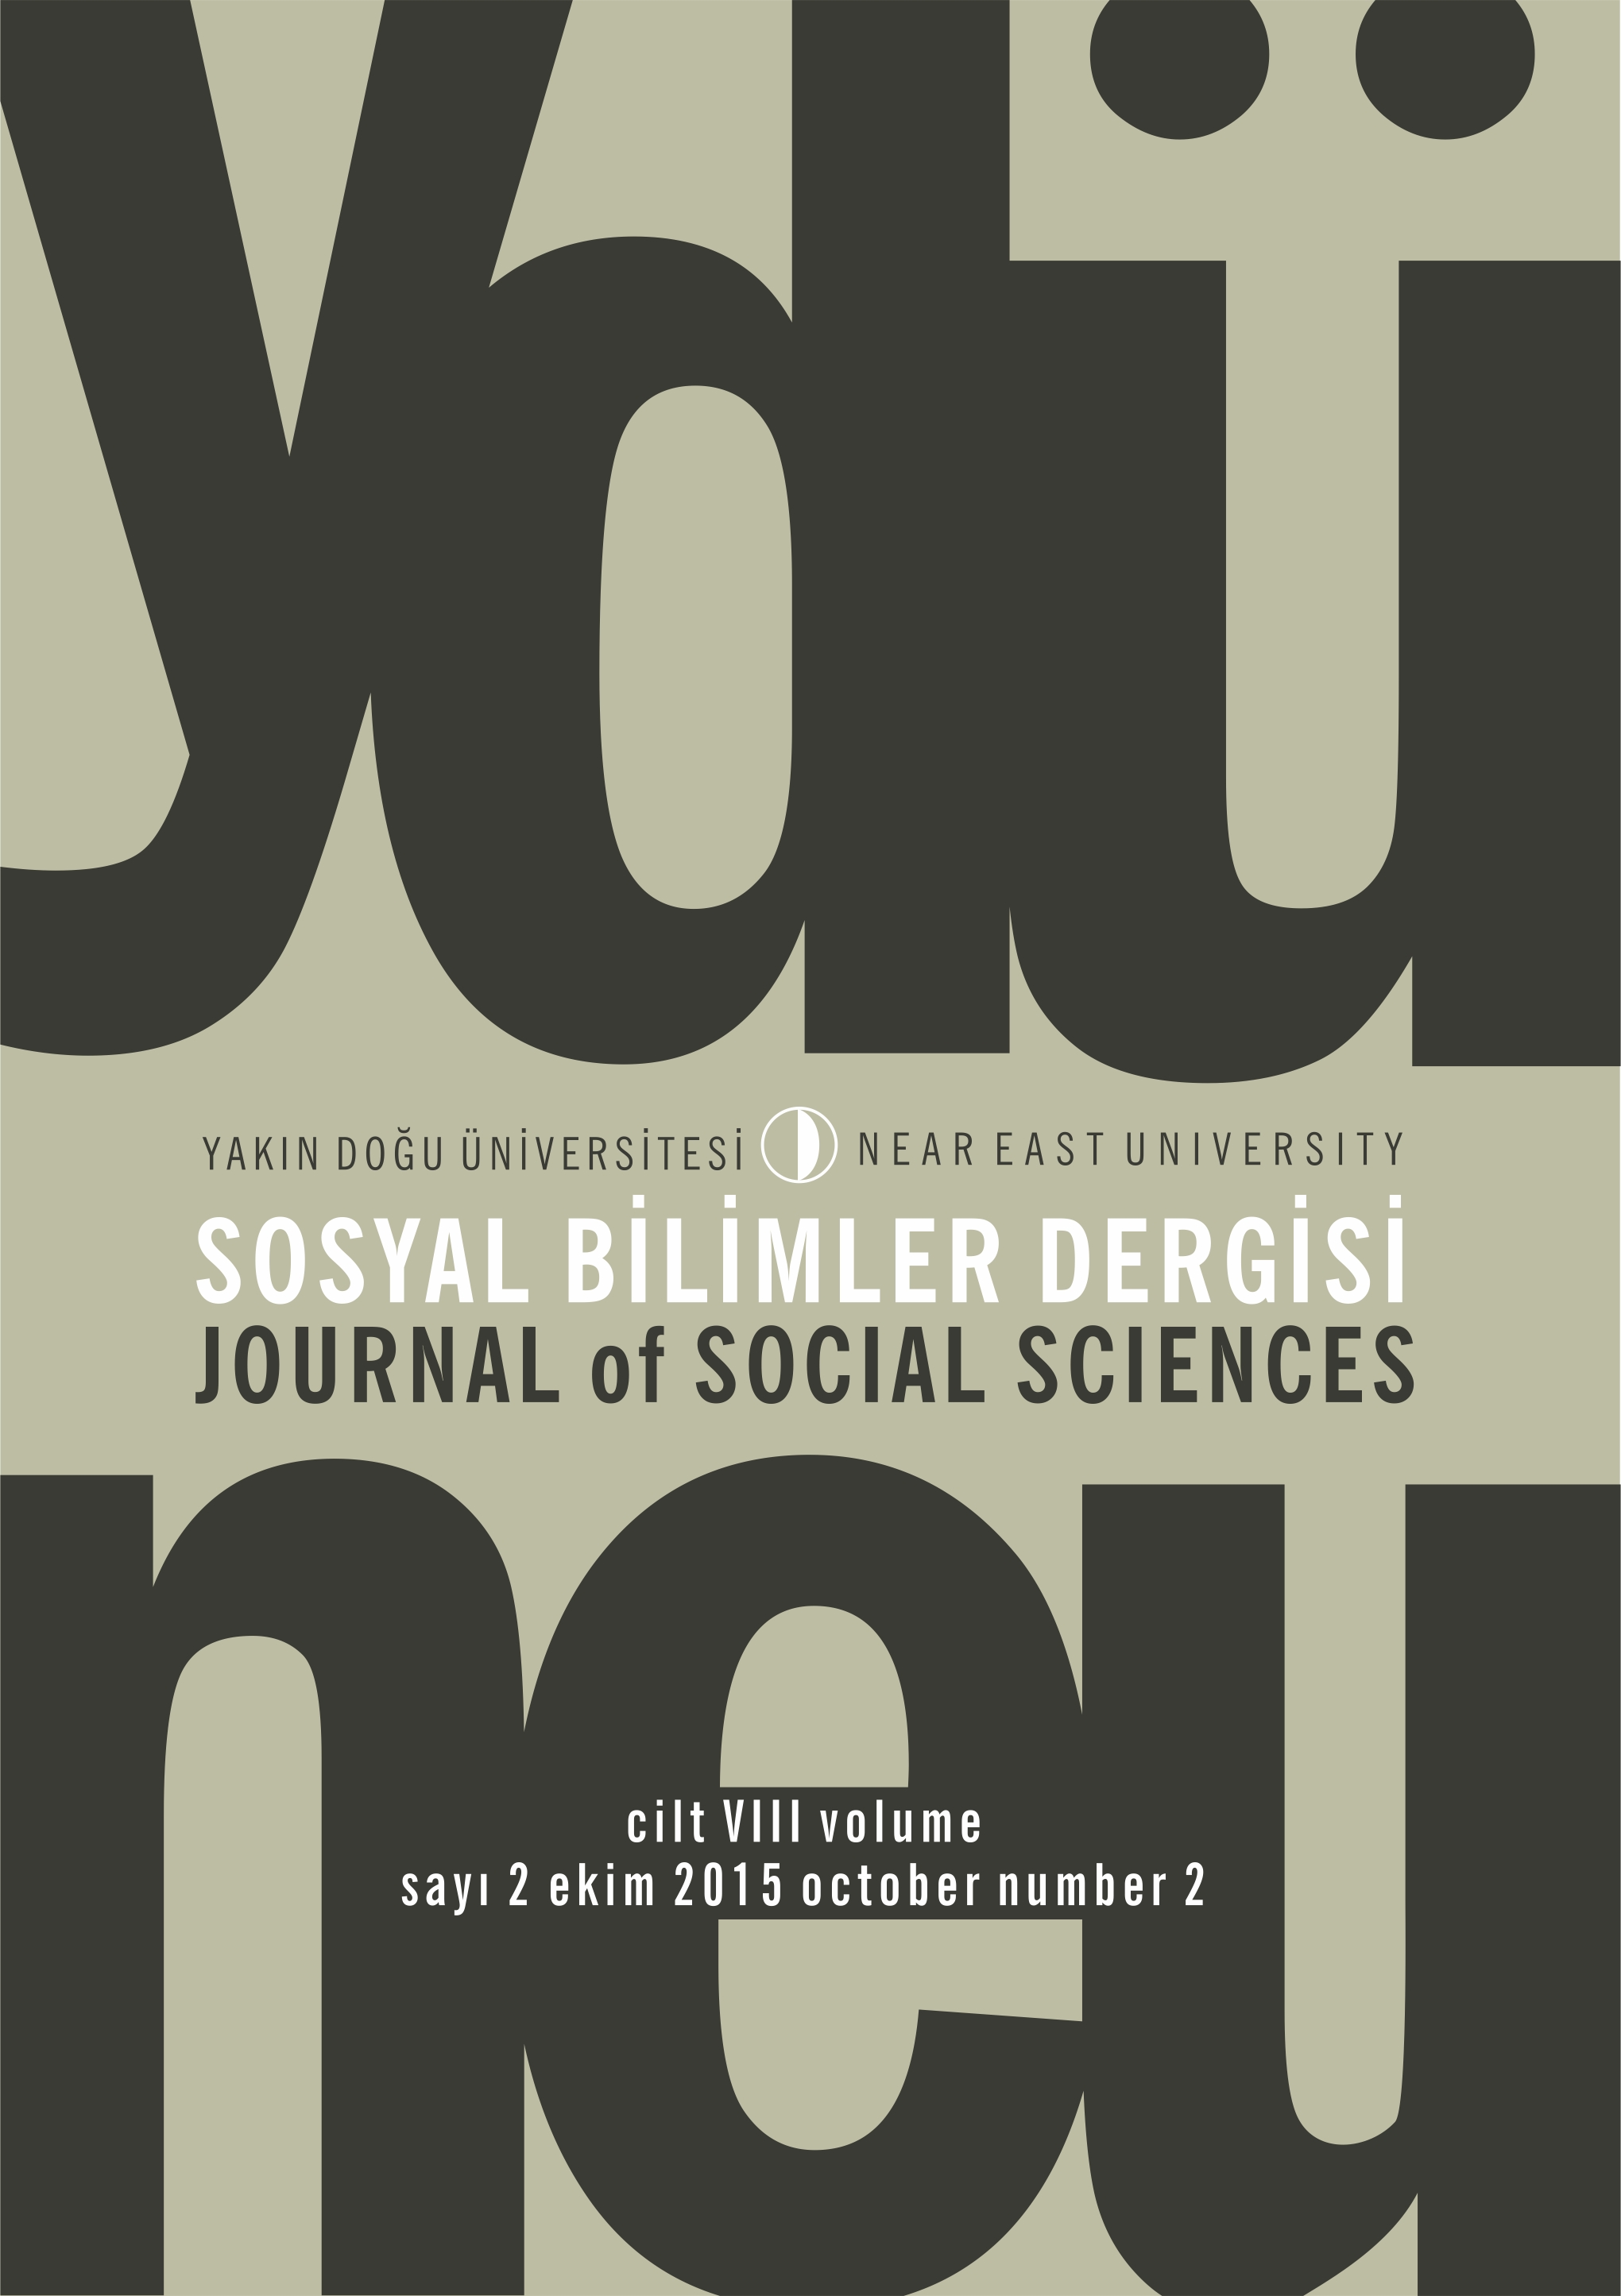 					Cilt 8 Sayı 2 (2015): Yakın Doğu Üniversitesi Sosyal Bilimler Dergisi Gör
				